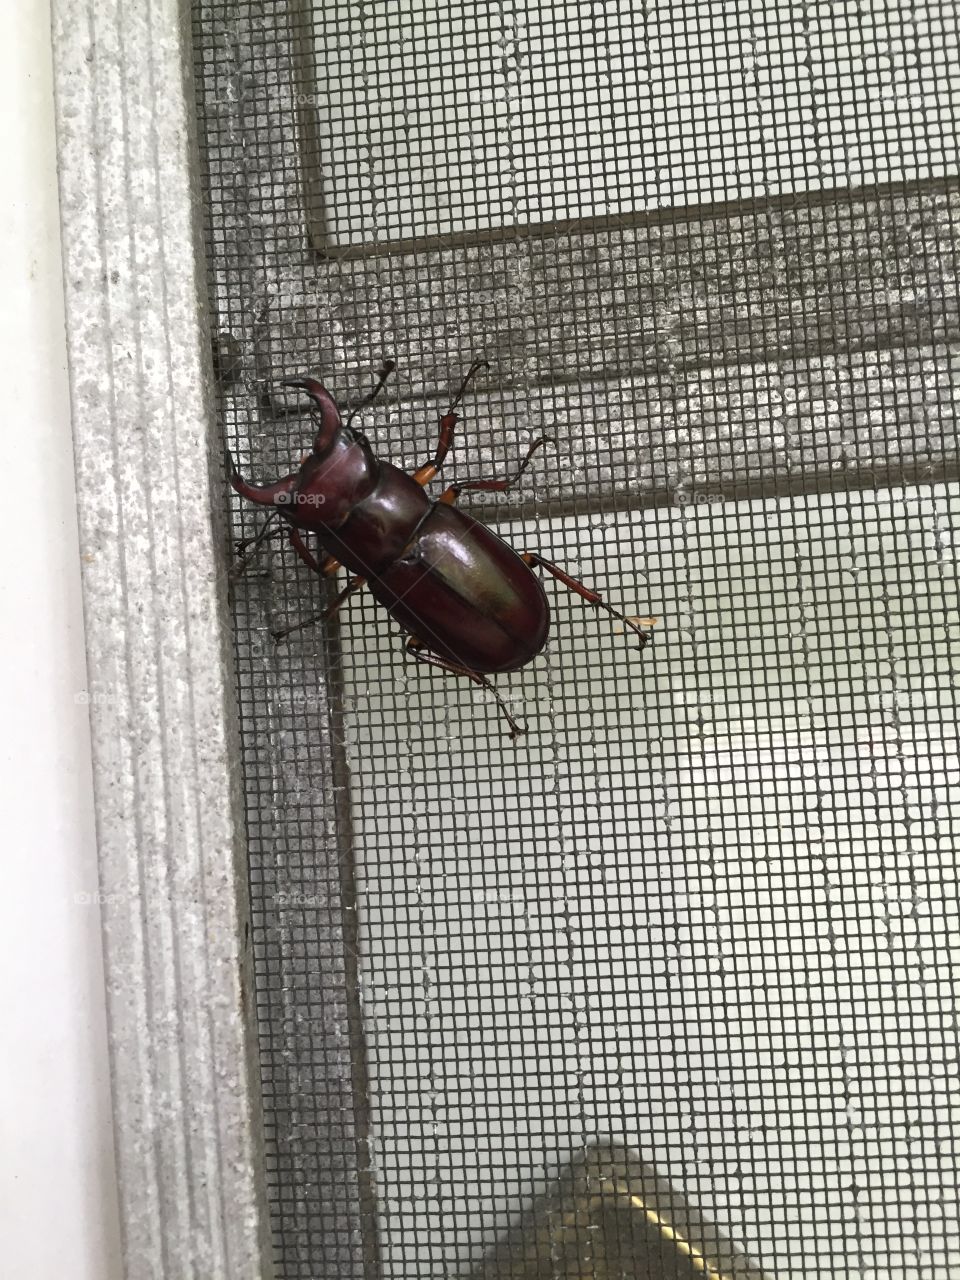 Huge Beetle. Huge Beetle on front door